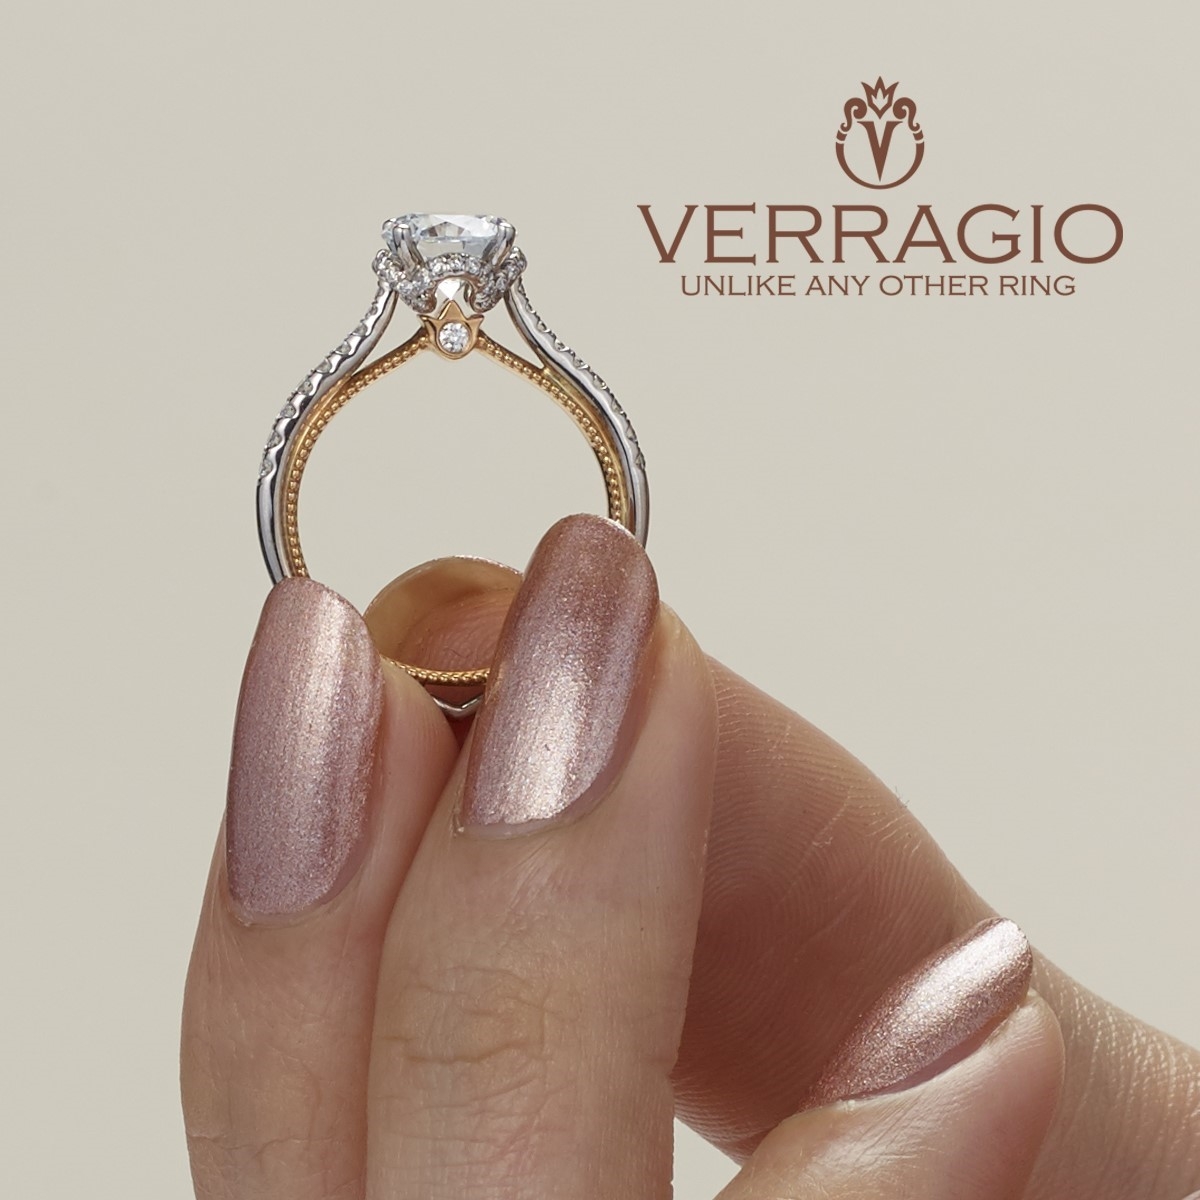 Verragio Couture-0457R-2WR 18 Karat Engagement Ring